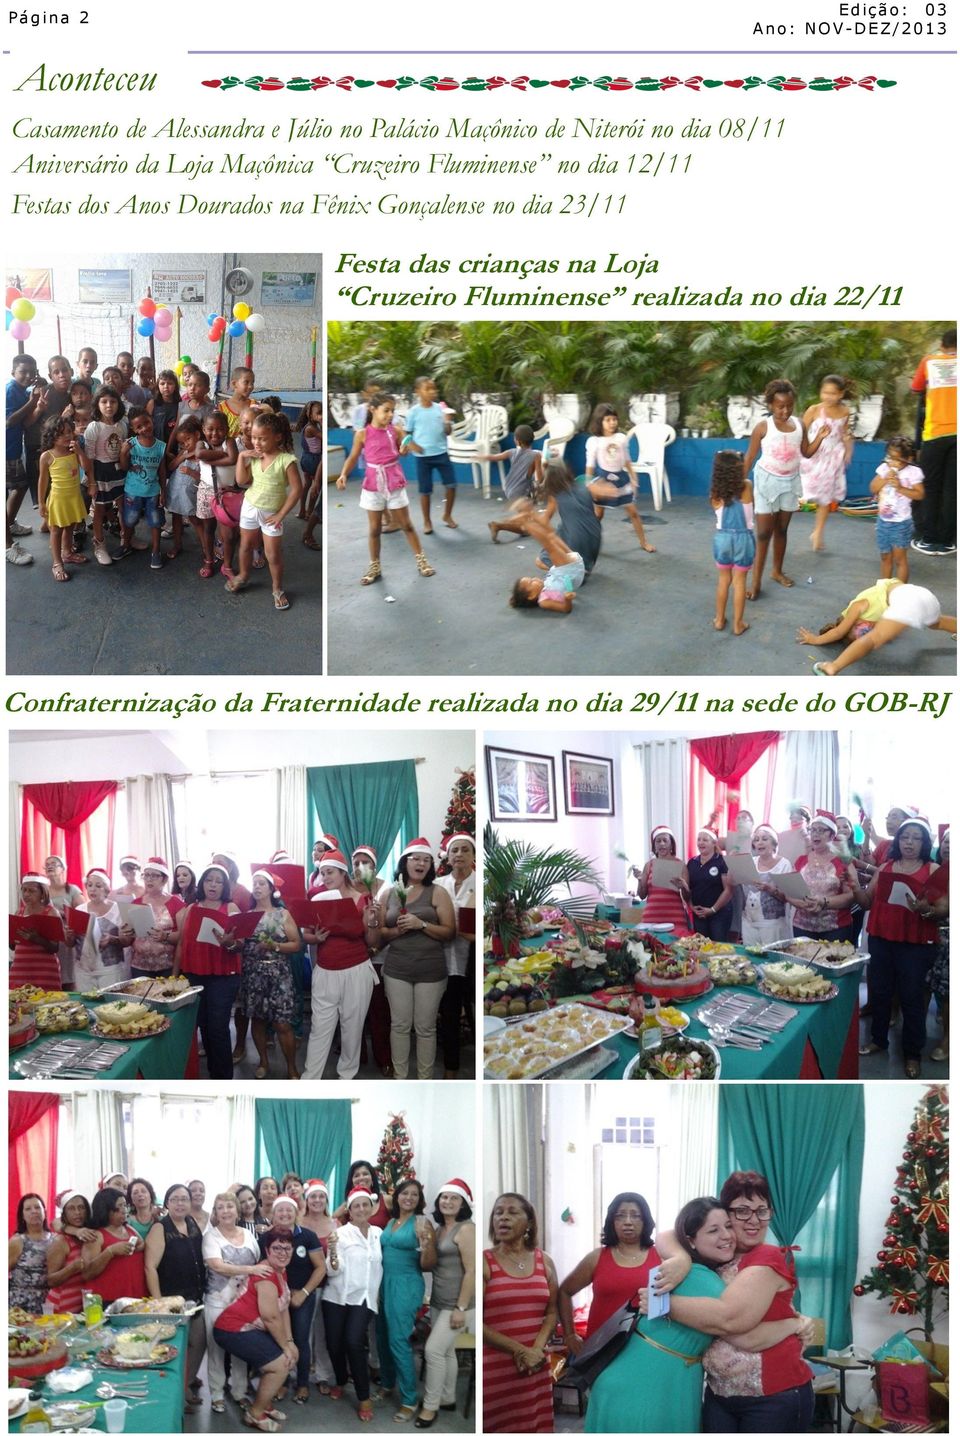 Dourados na Fênix Gonçalense no dia 23/11 Festa das crianças na Loja Cruzeiro Fluminense